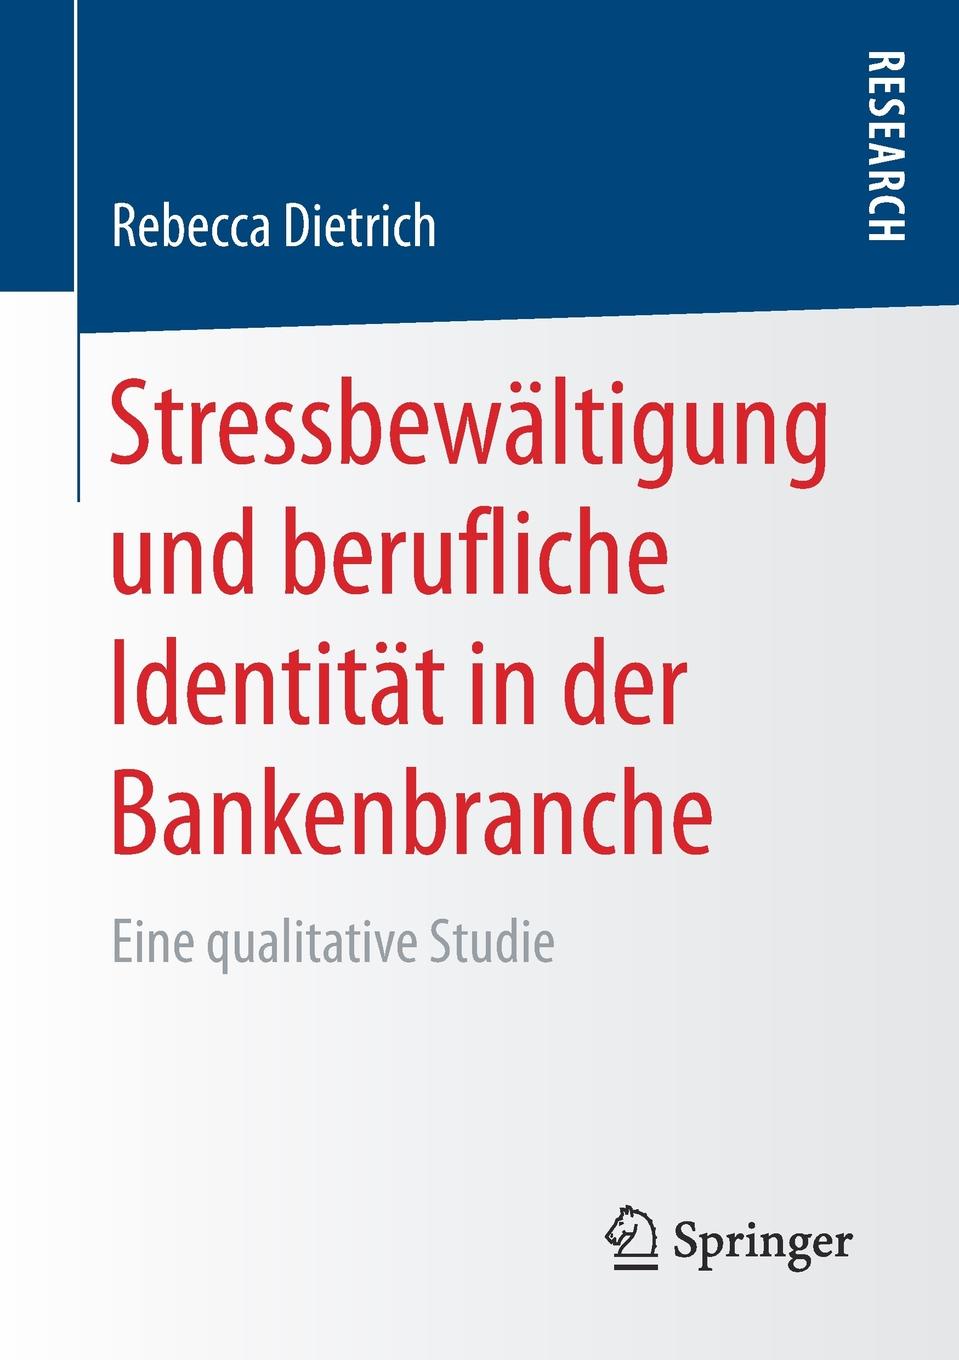 Stressbewaltigung und berufliche Identitat in der Bankenbranche. Eine qualitative Studie